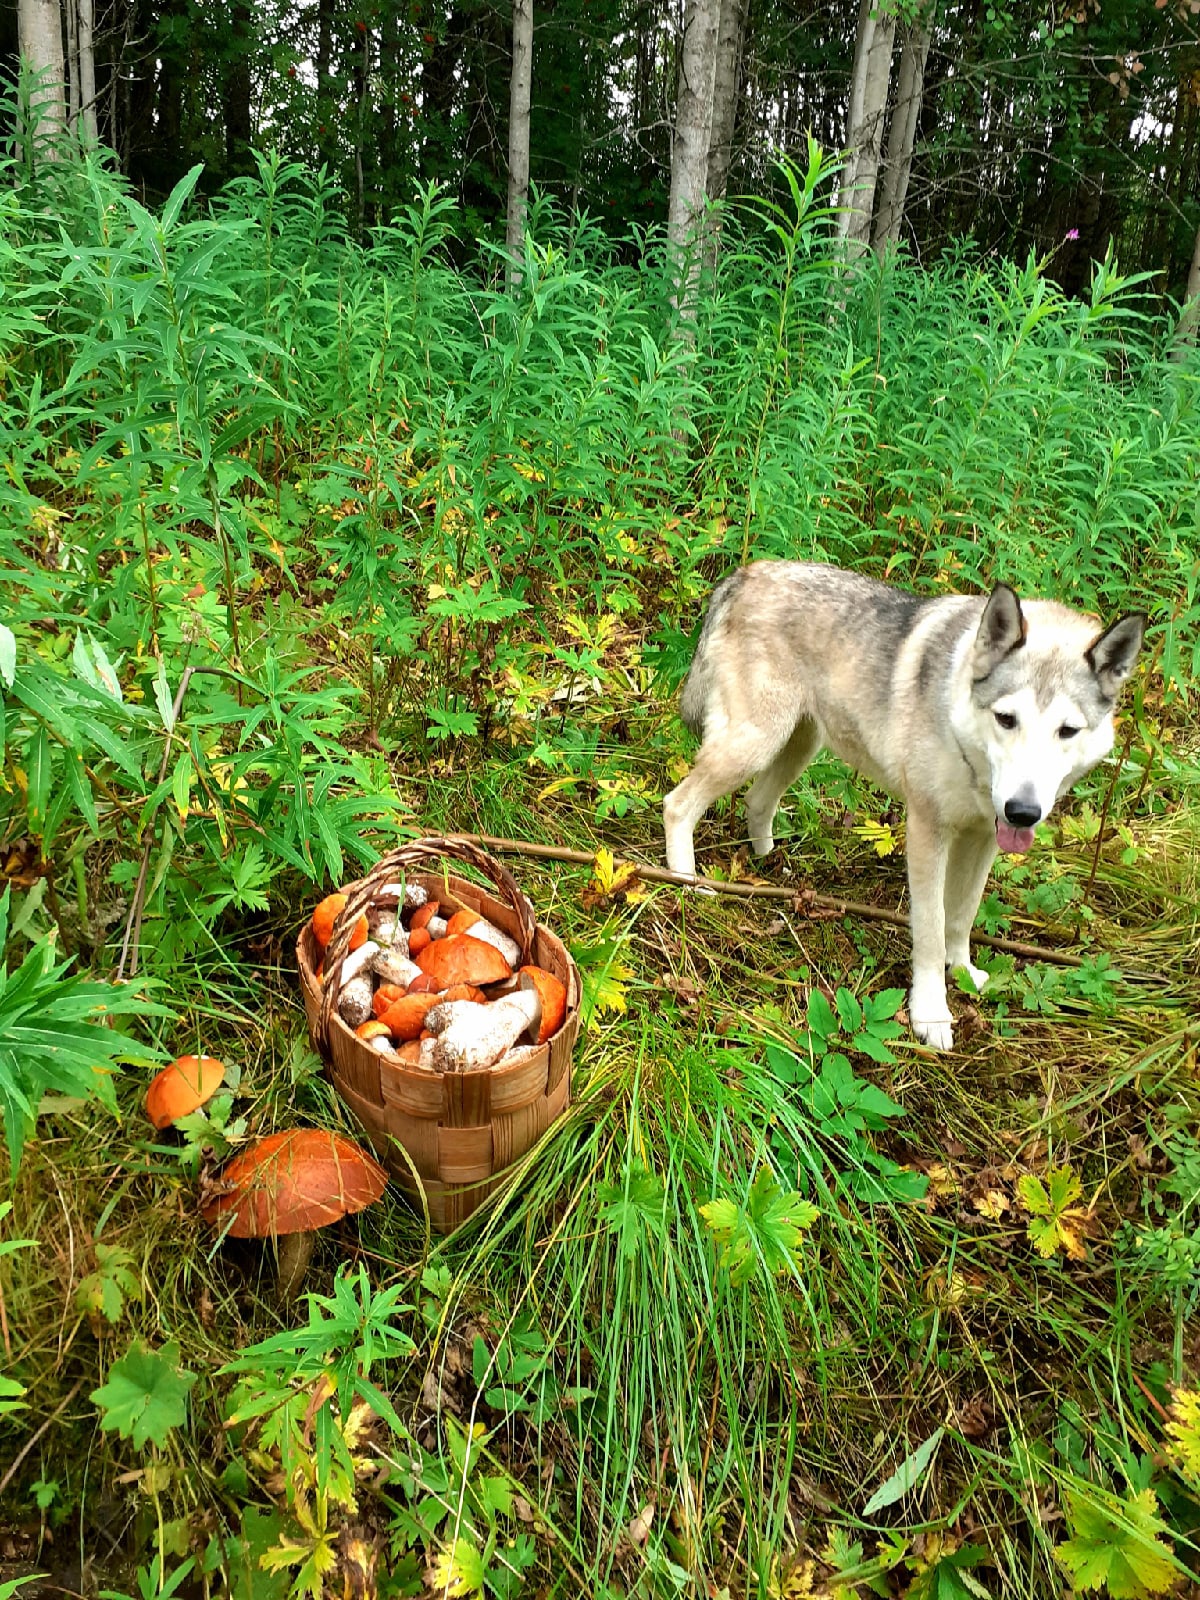 Еще один кадр — с красноголовиками. Александр и его симпатичная компаньонка Айда собирают грибы в Холмогорском районе